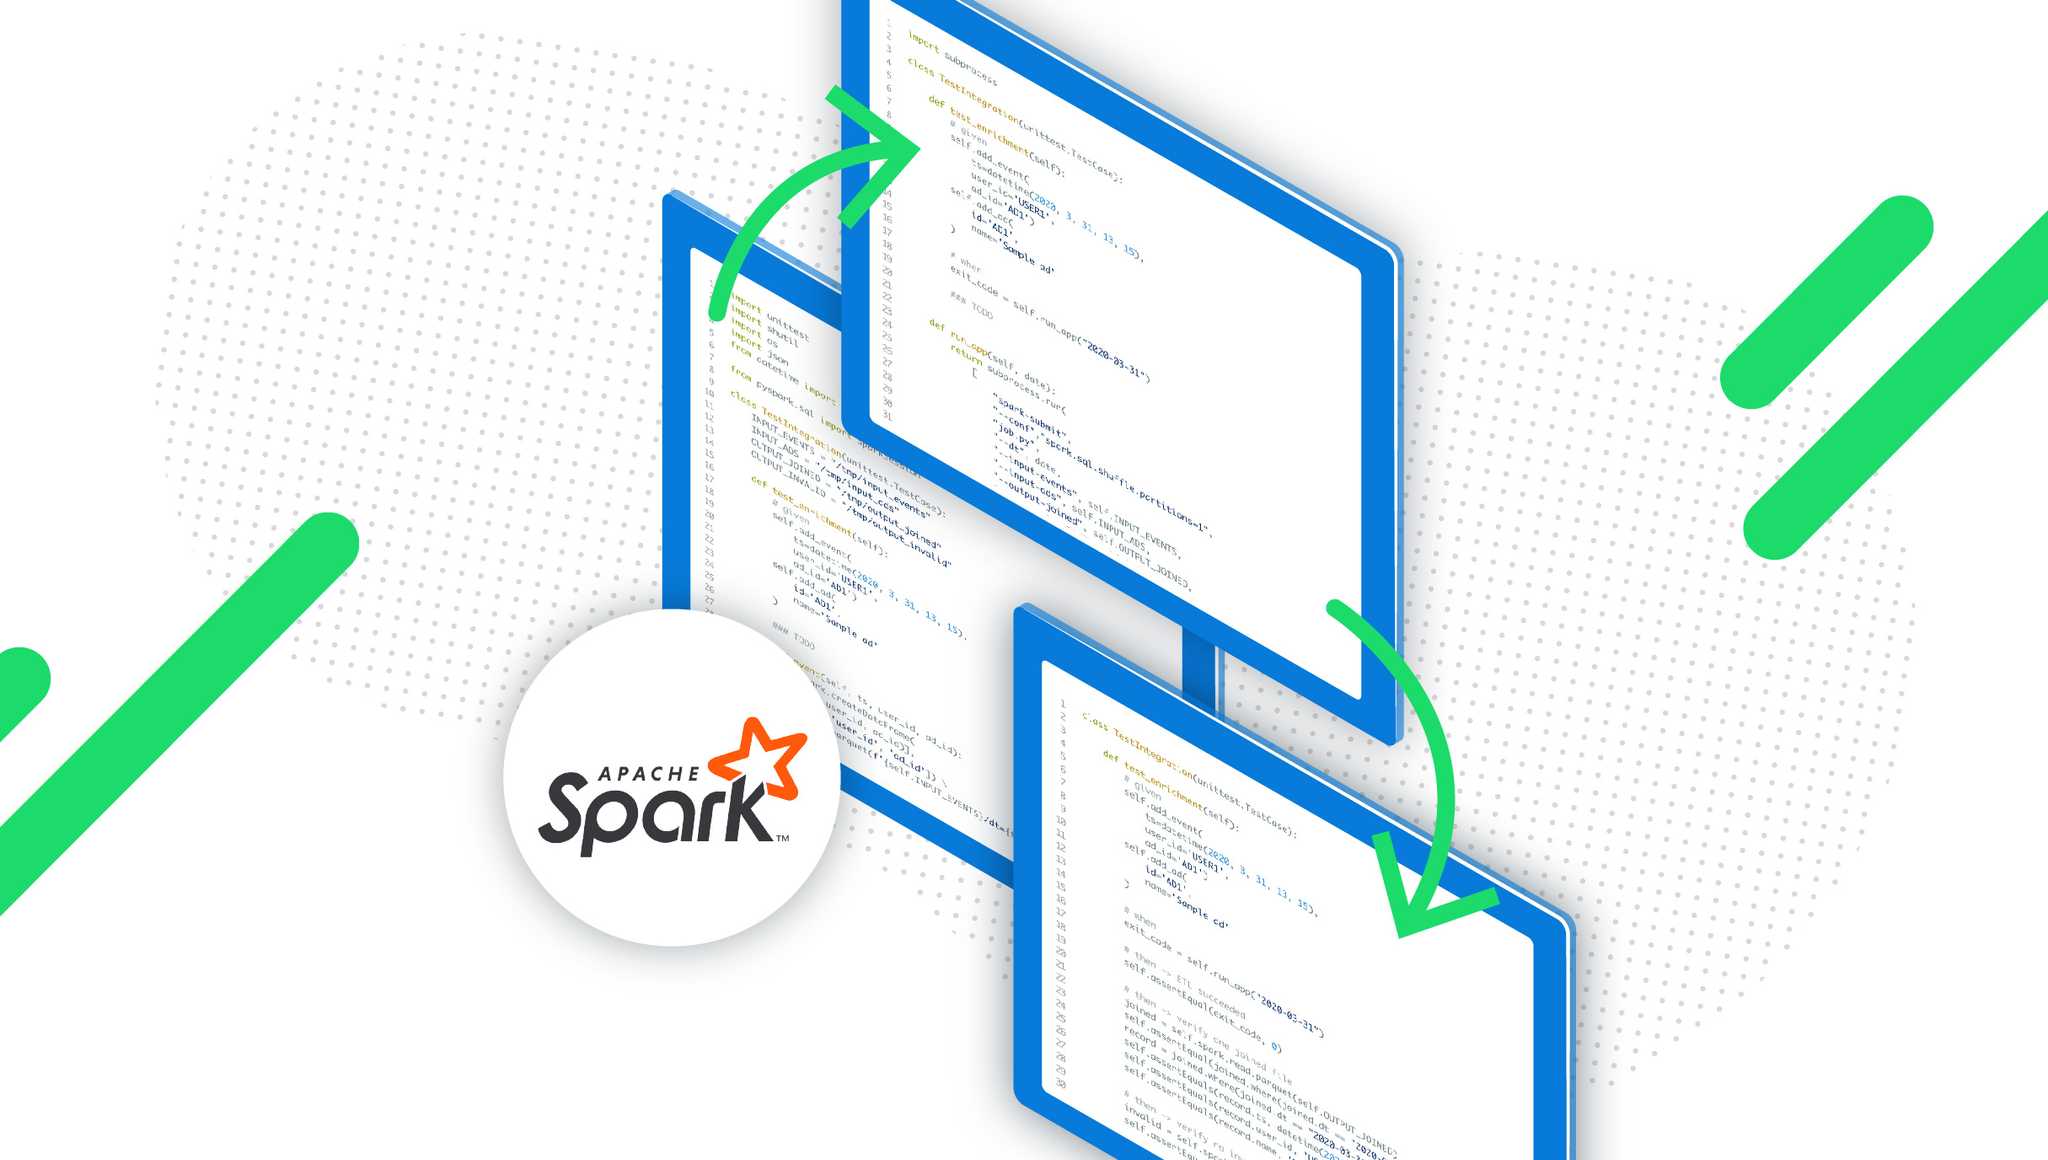 Integration-test-spark-applications